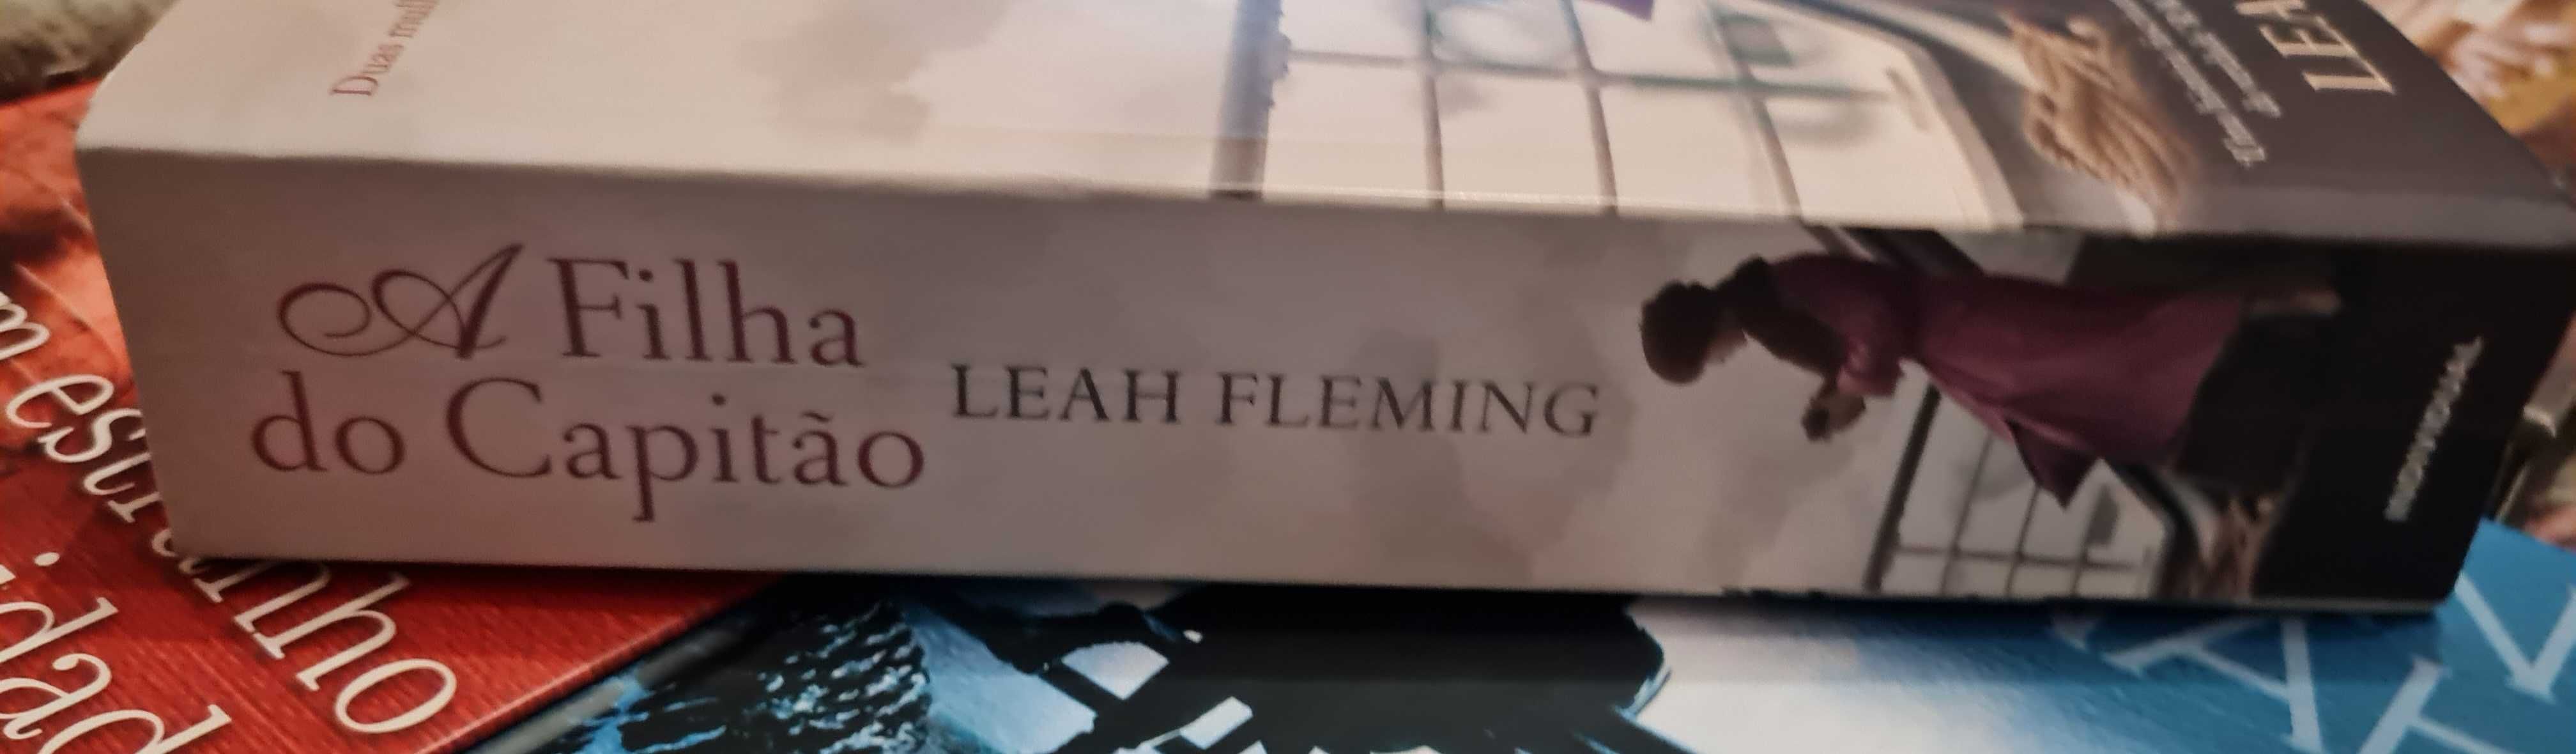 A Filha do Capitão de Leah Fleming